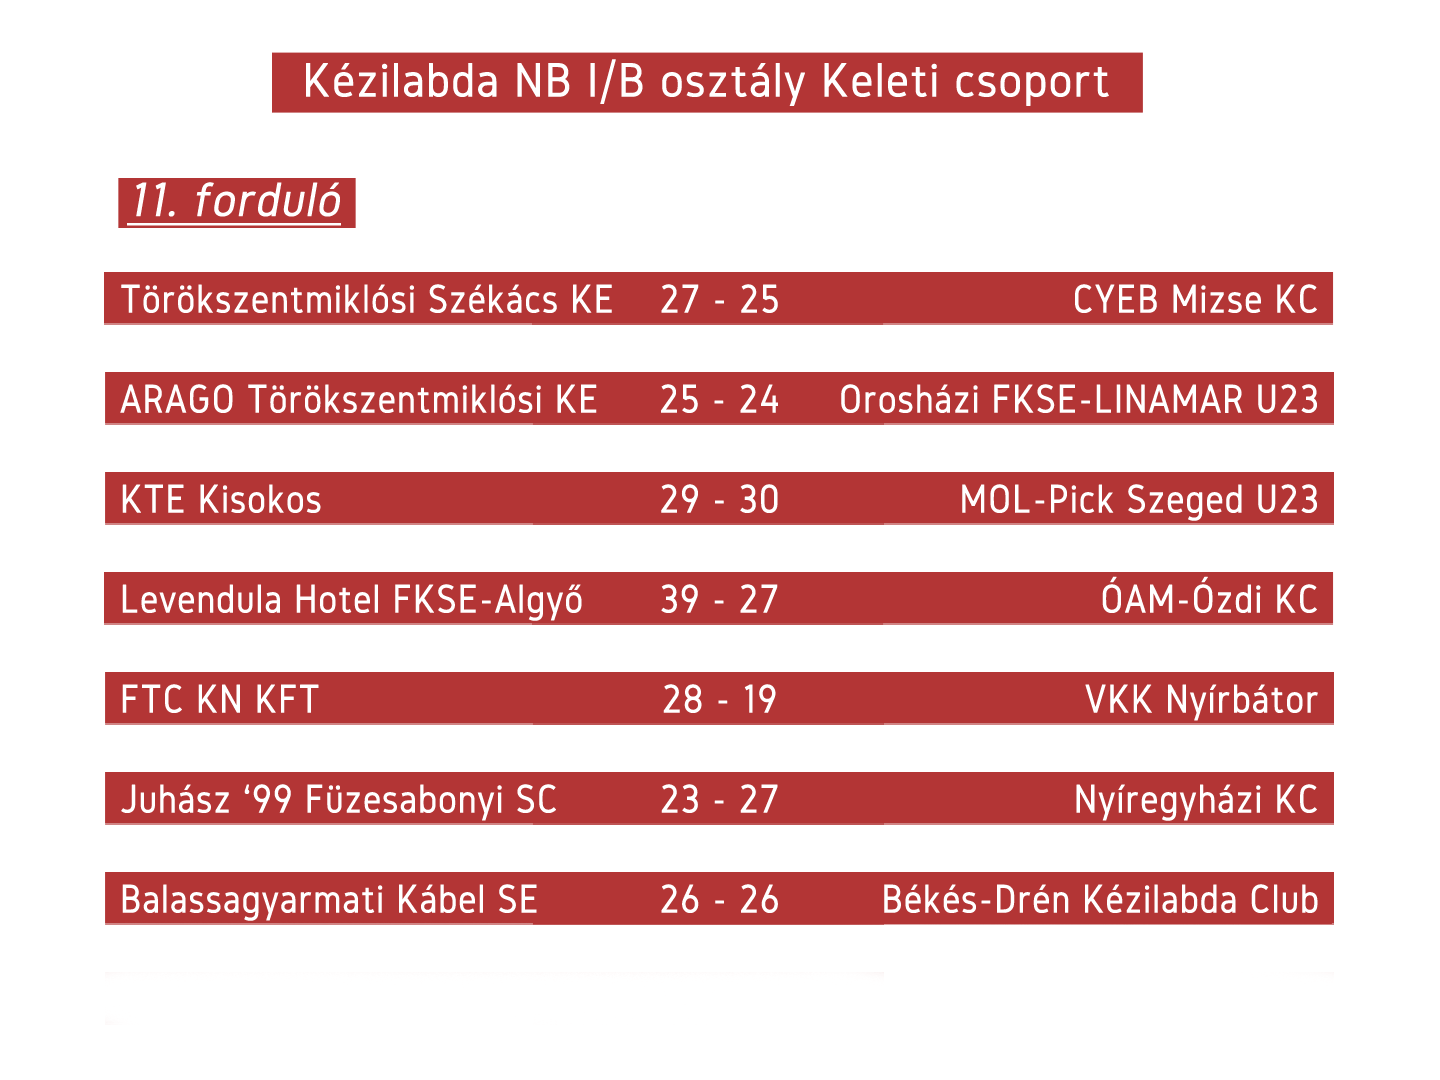 Sikeresen szerepeltek hazai pályán NBI/B-s kézilabda csapataink a hétvégén